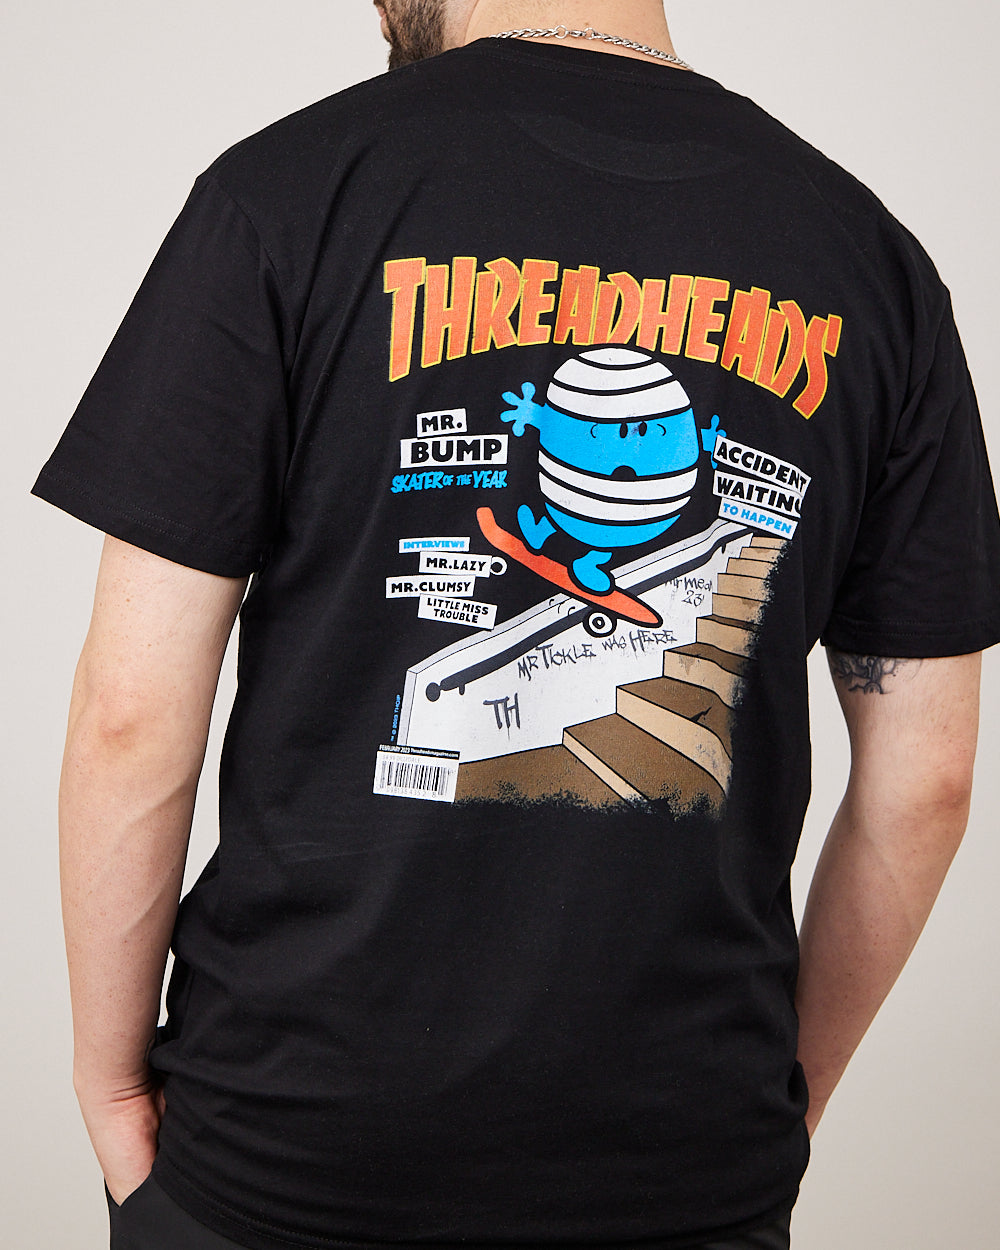 Mr. Bump T-Shirt Australia Online #colour_black